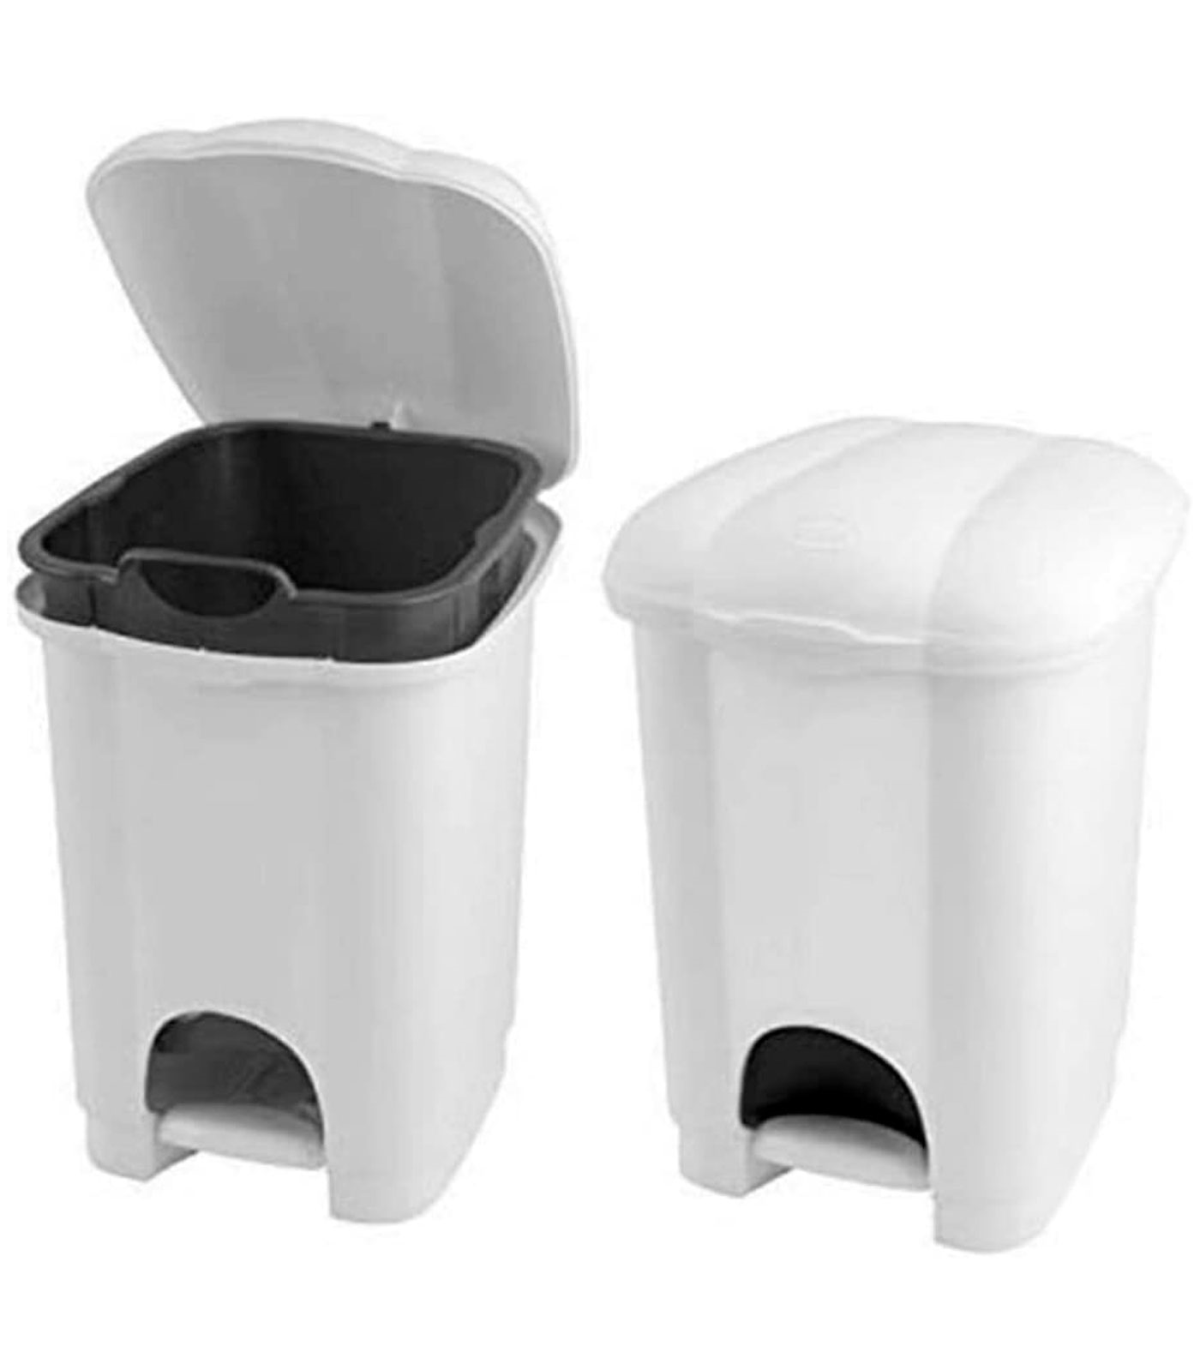 Tradineur - Cubo de basura de plástico, 31 litros, incluye tapa y